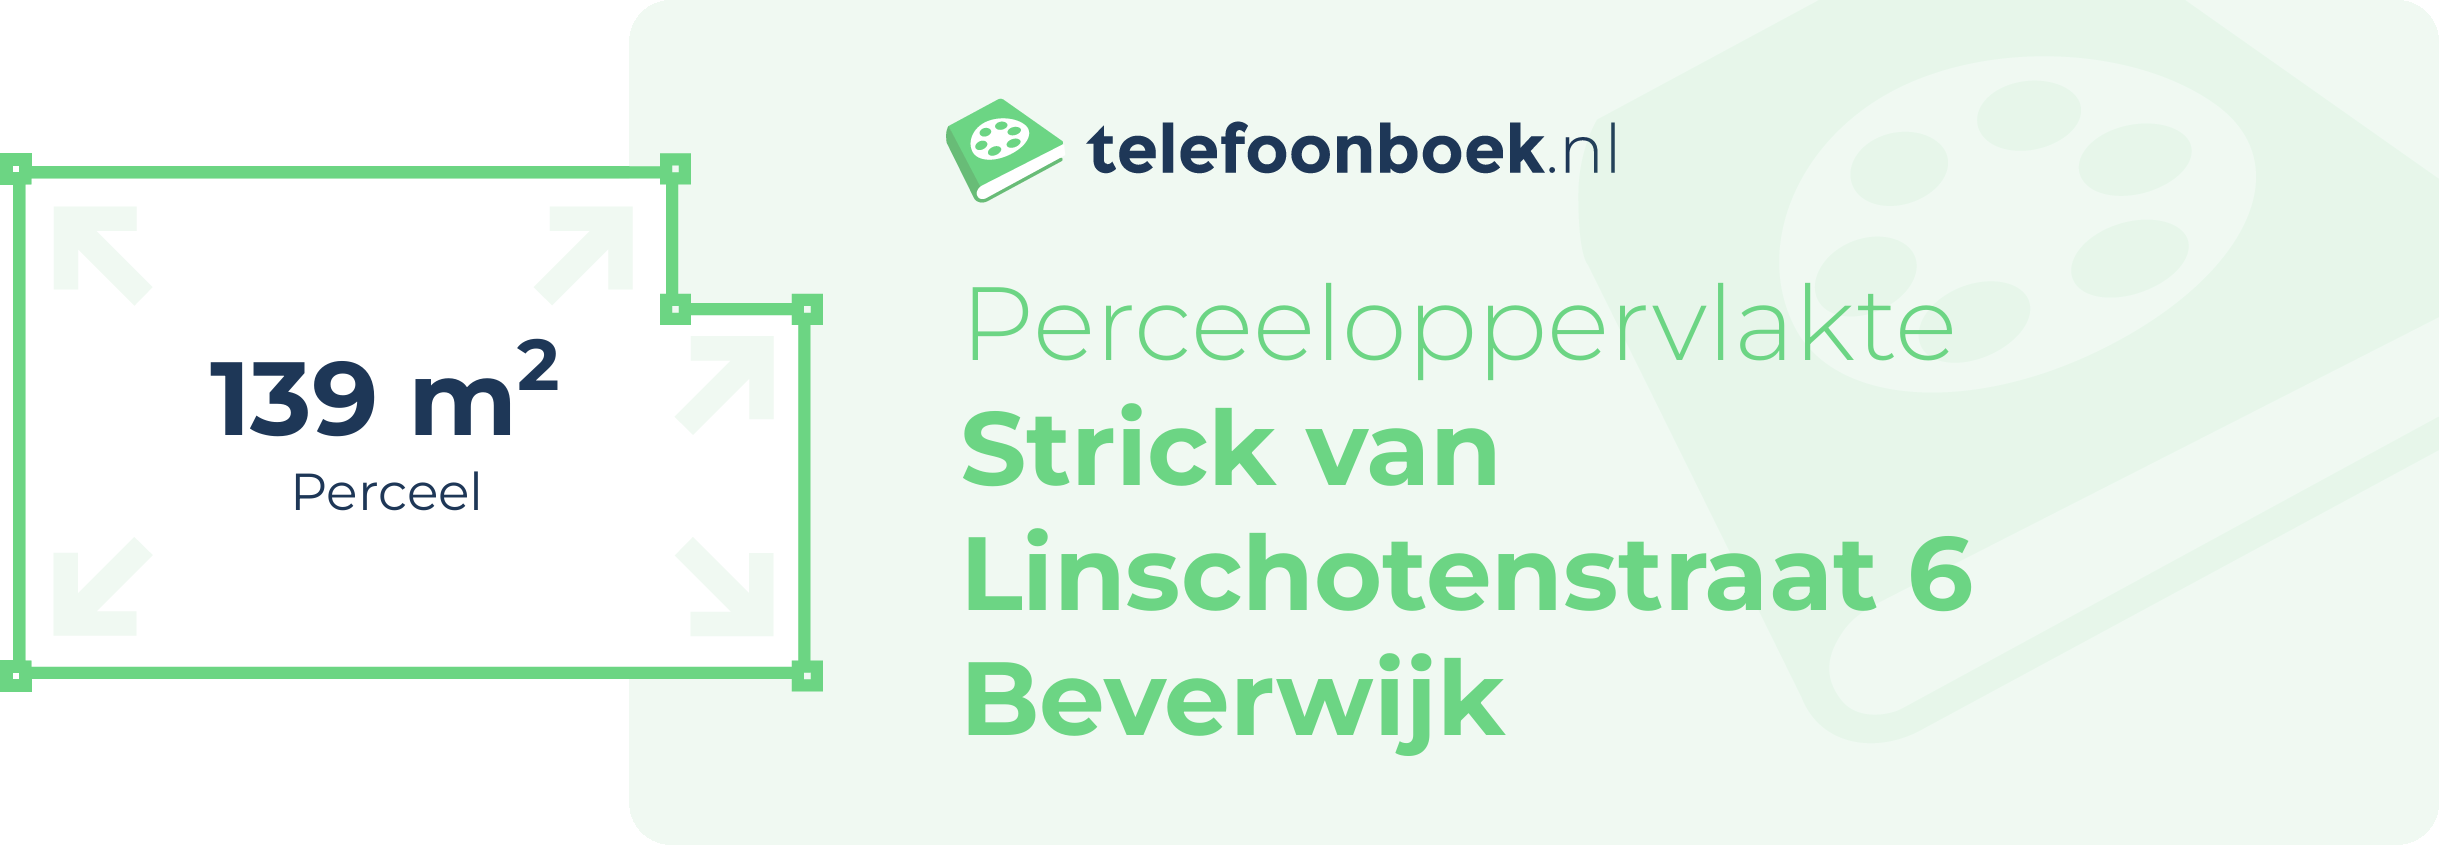 Perceeloppervlakte Strick Van Linschotenstraat 6 Beverwijk